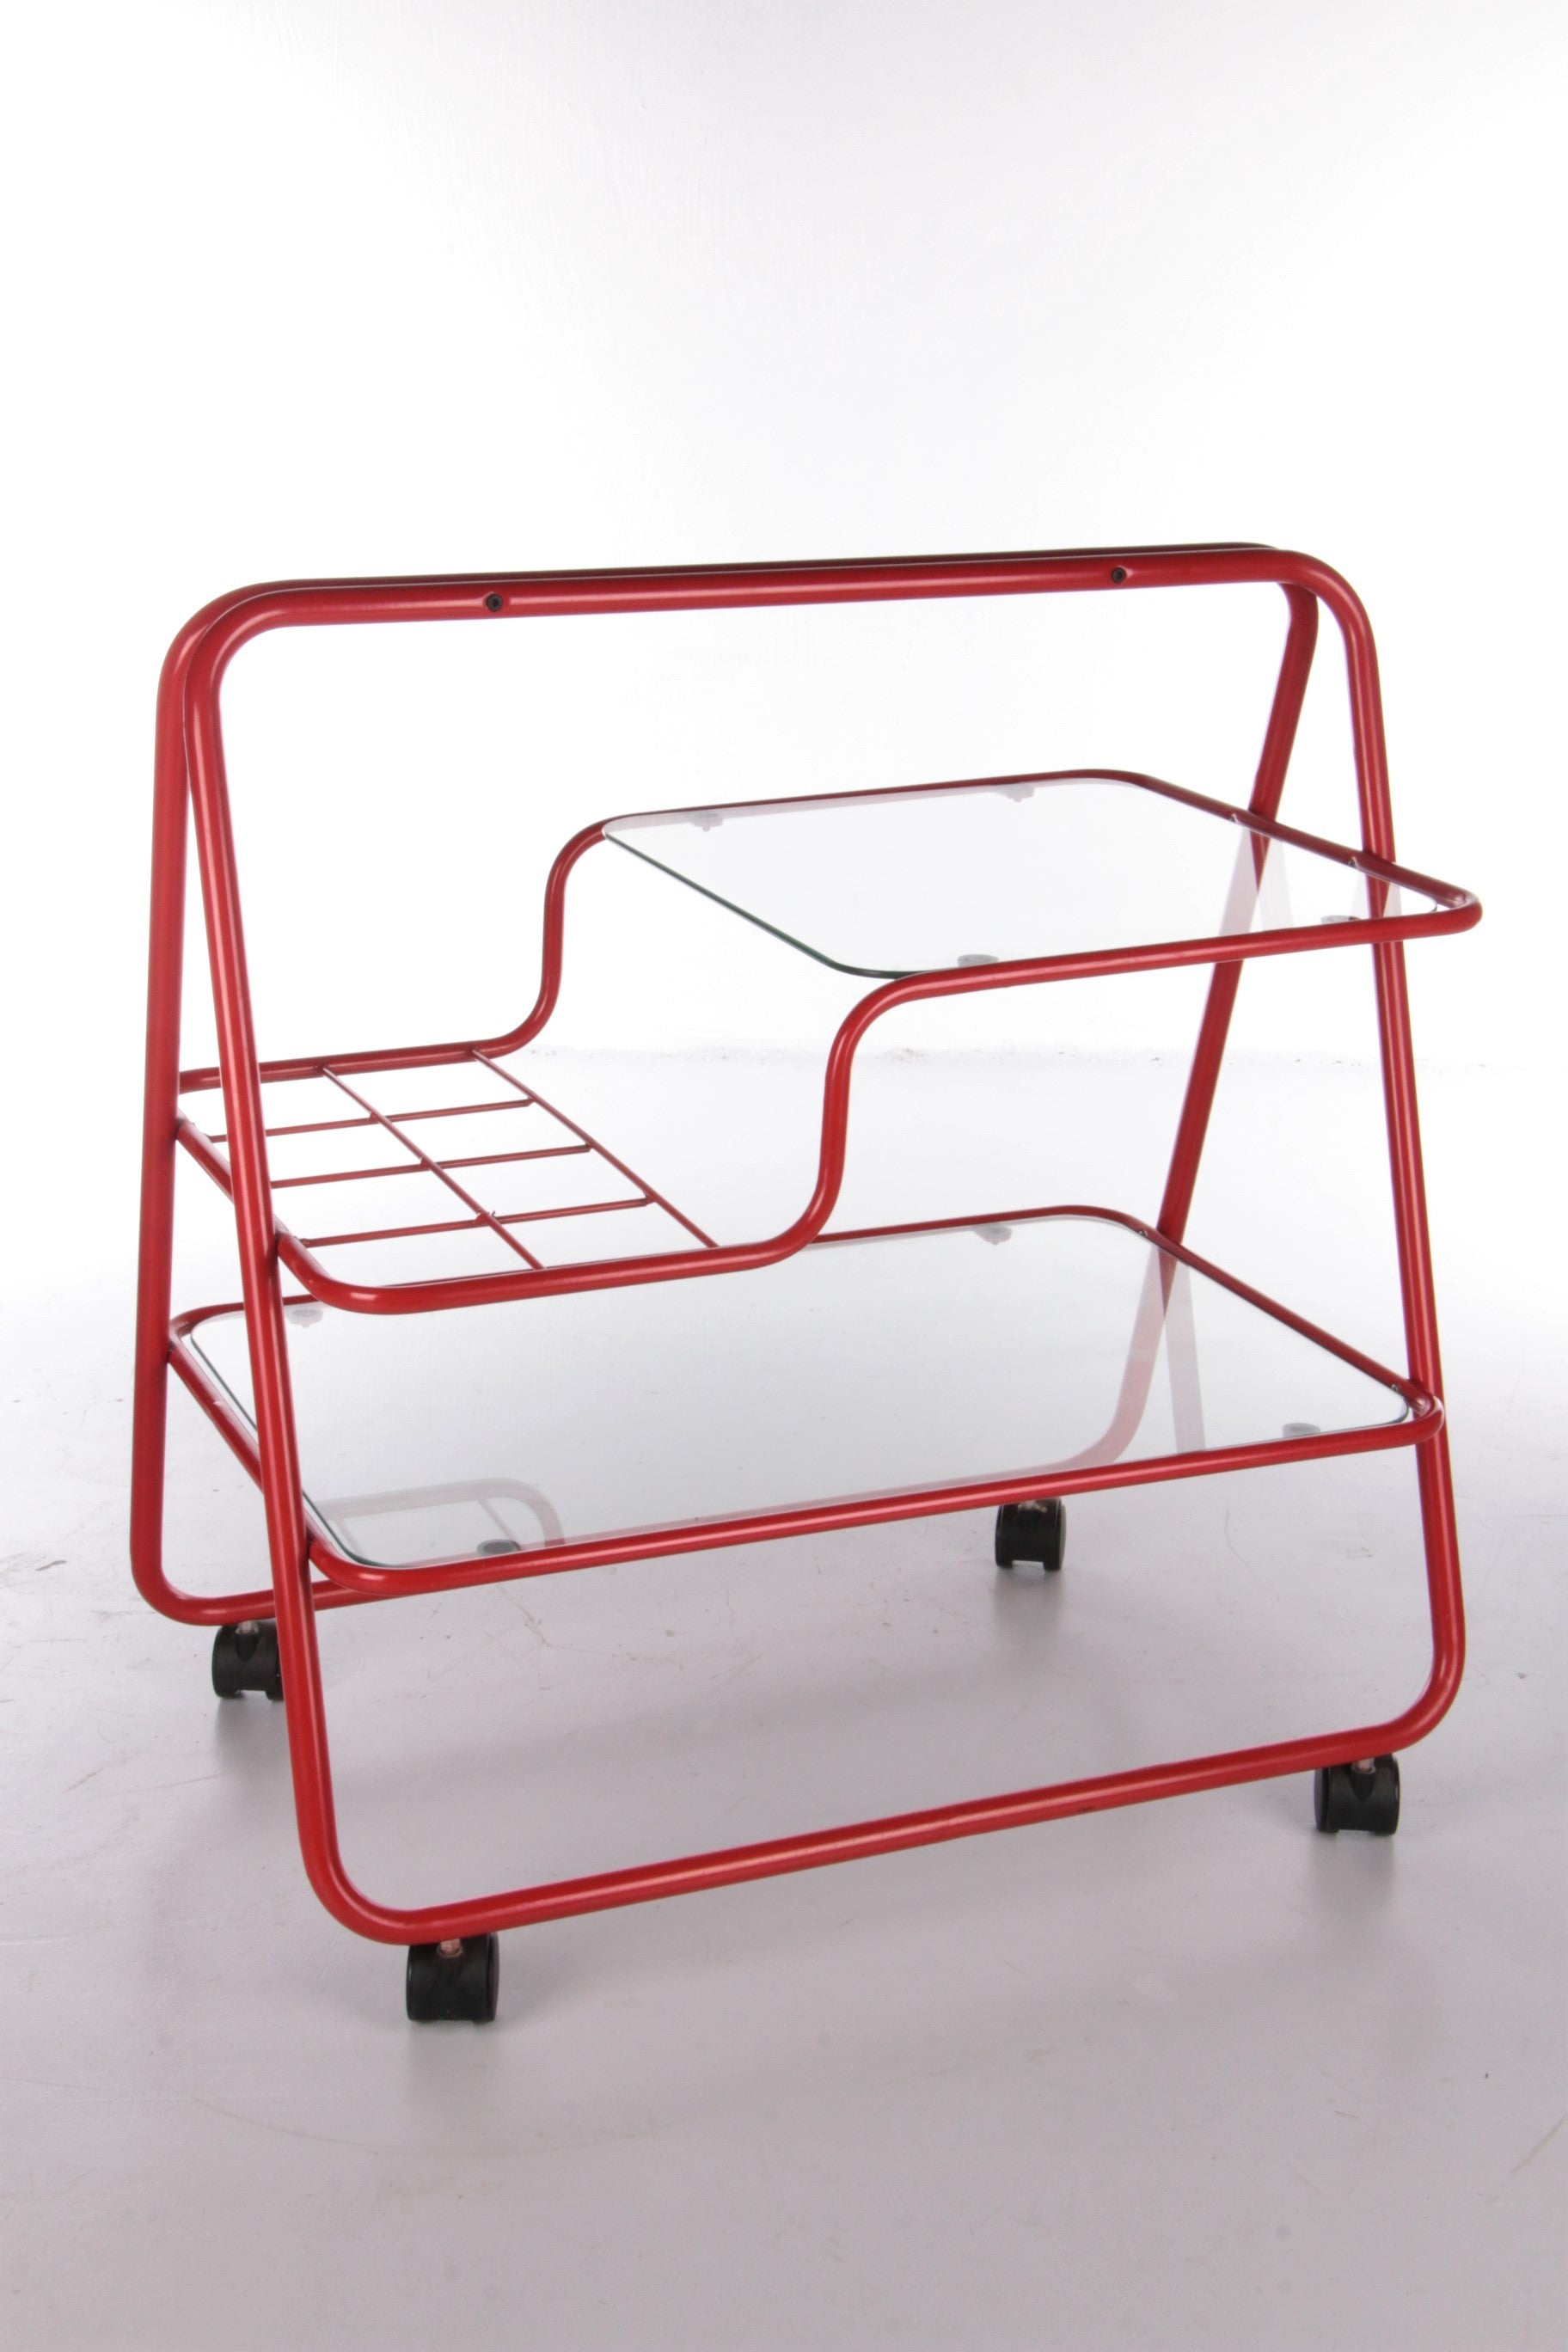 halfrond Reusachtig wees stil Vintage red metal unique Trolley or bar cart,1970s – Timeless-Art